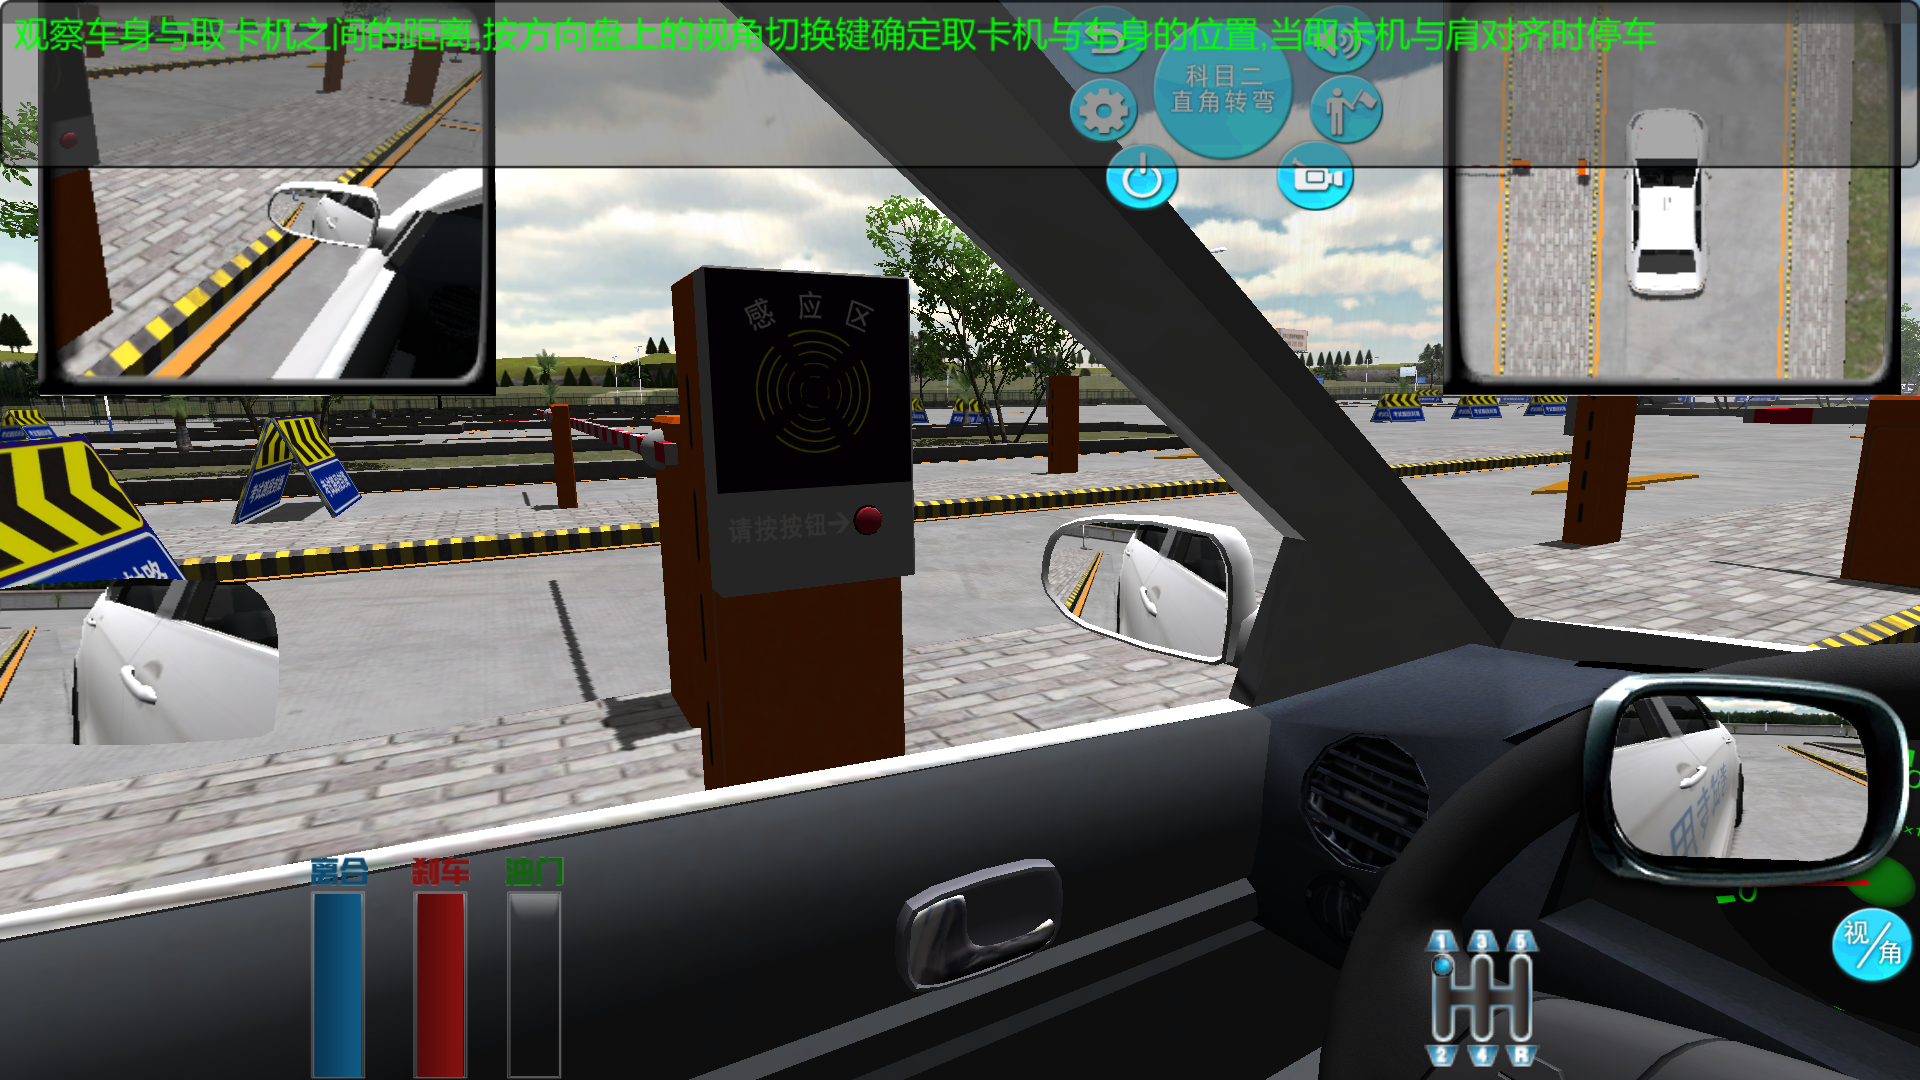 学车之星学车模拟机软件项目——高速取卡